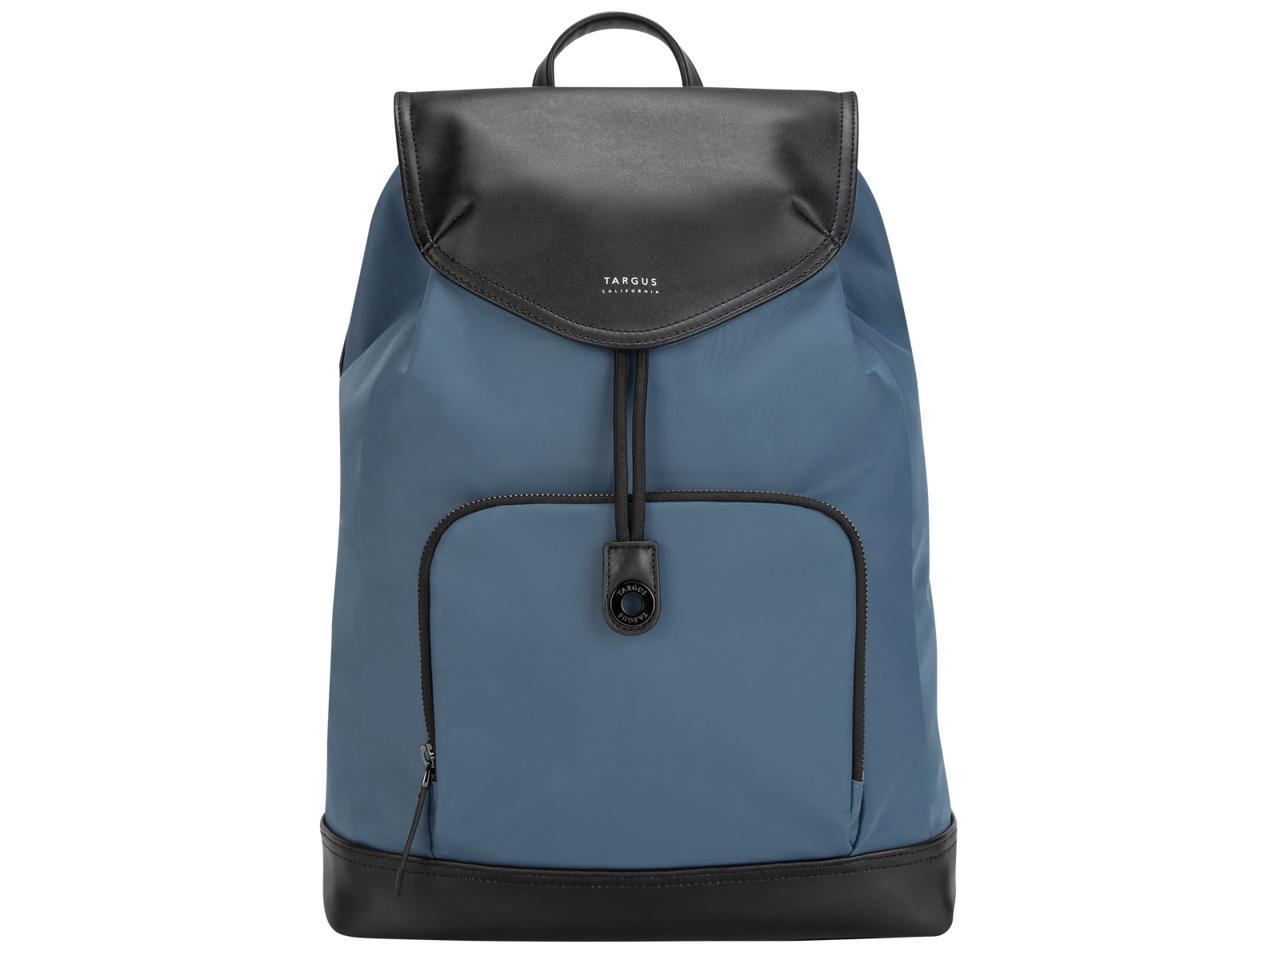 Targus 15" Newport Drawstring Backpack (Slate Blue) - TSB96403GL